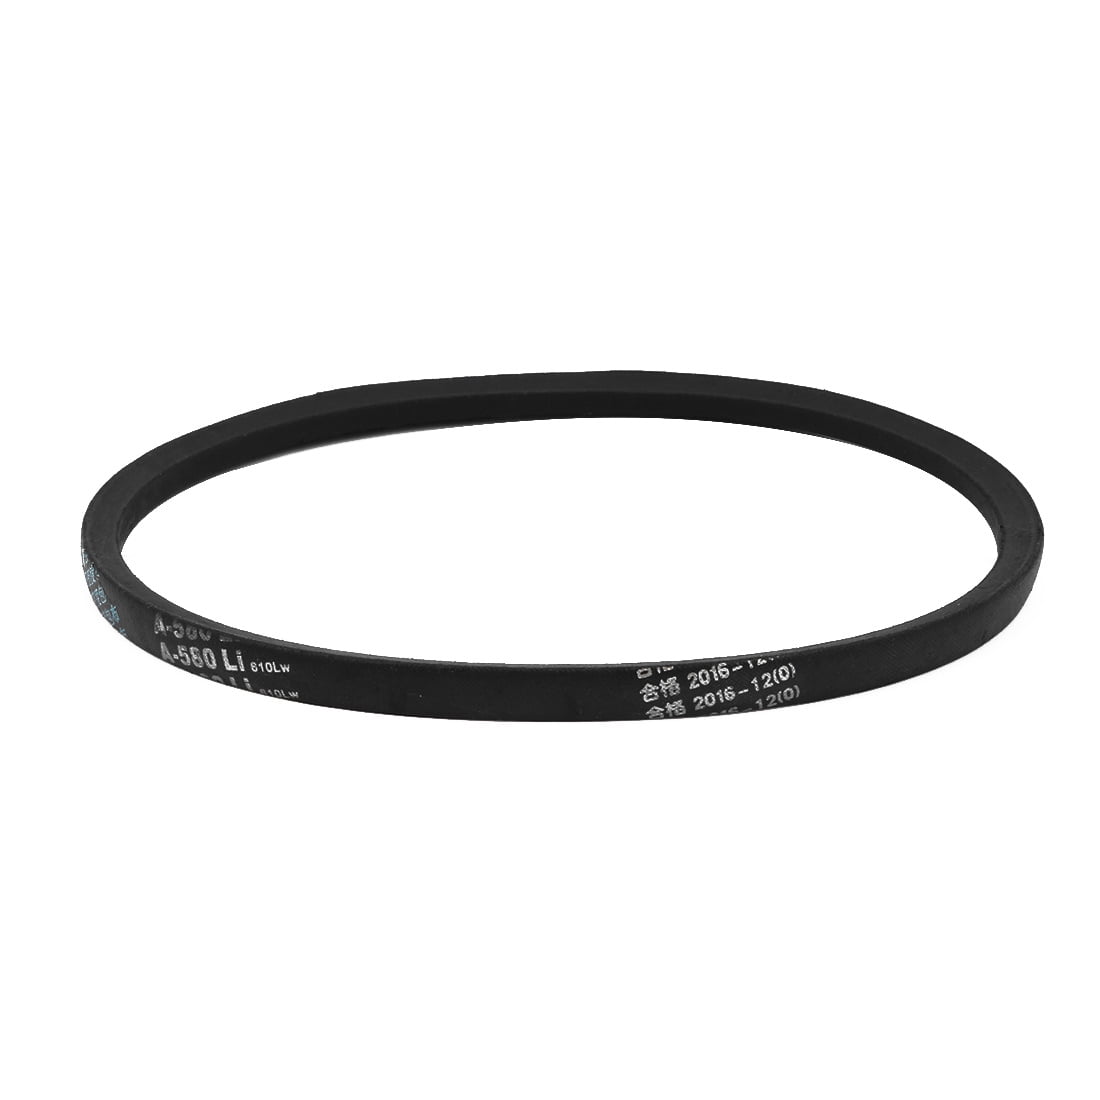 V-Belt Gear Timing Belt Transmission Drive Belt Width:13mm Thick:8mm